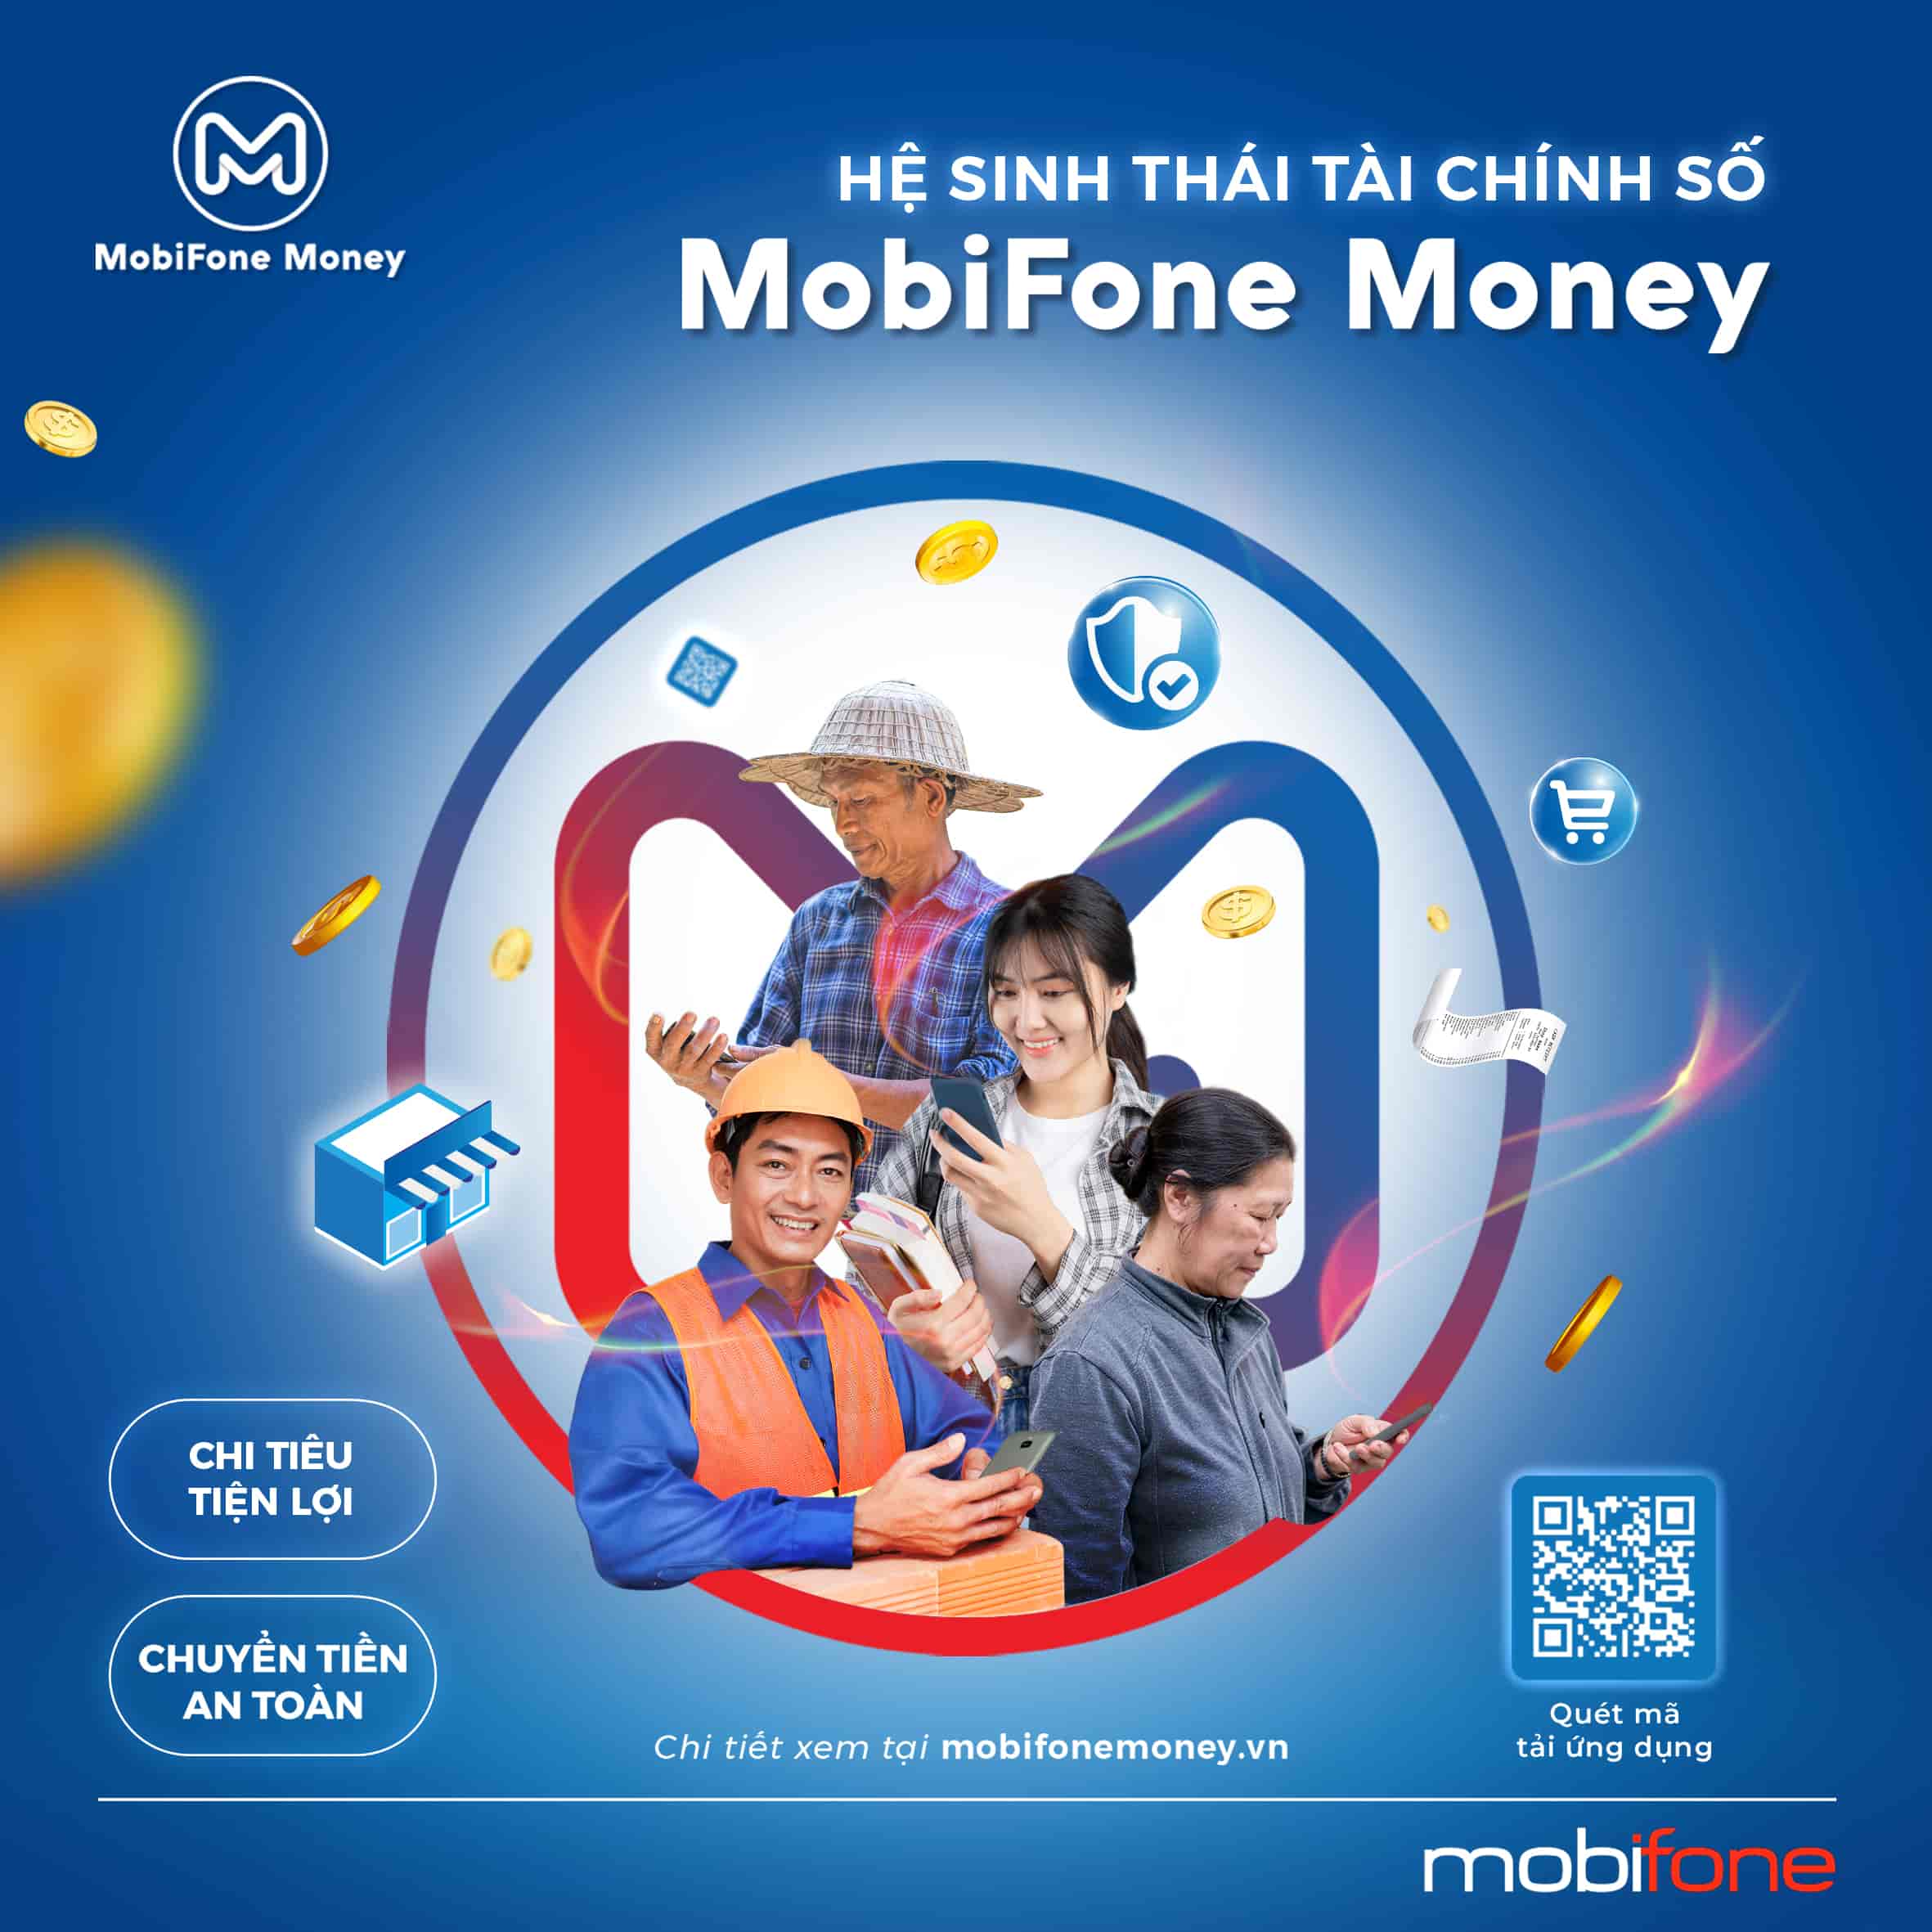 MobiFone Money xin chào!